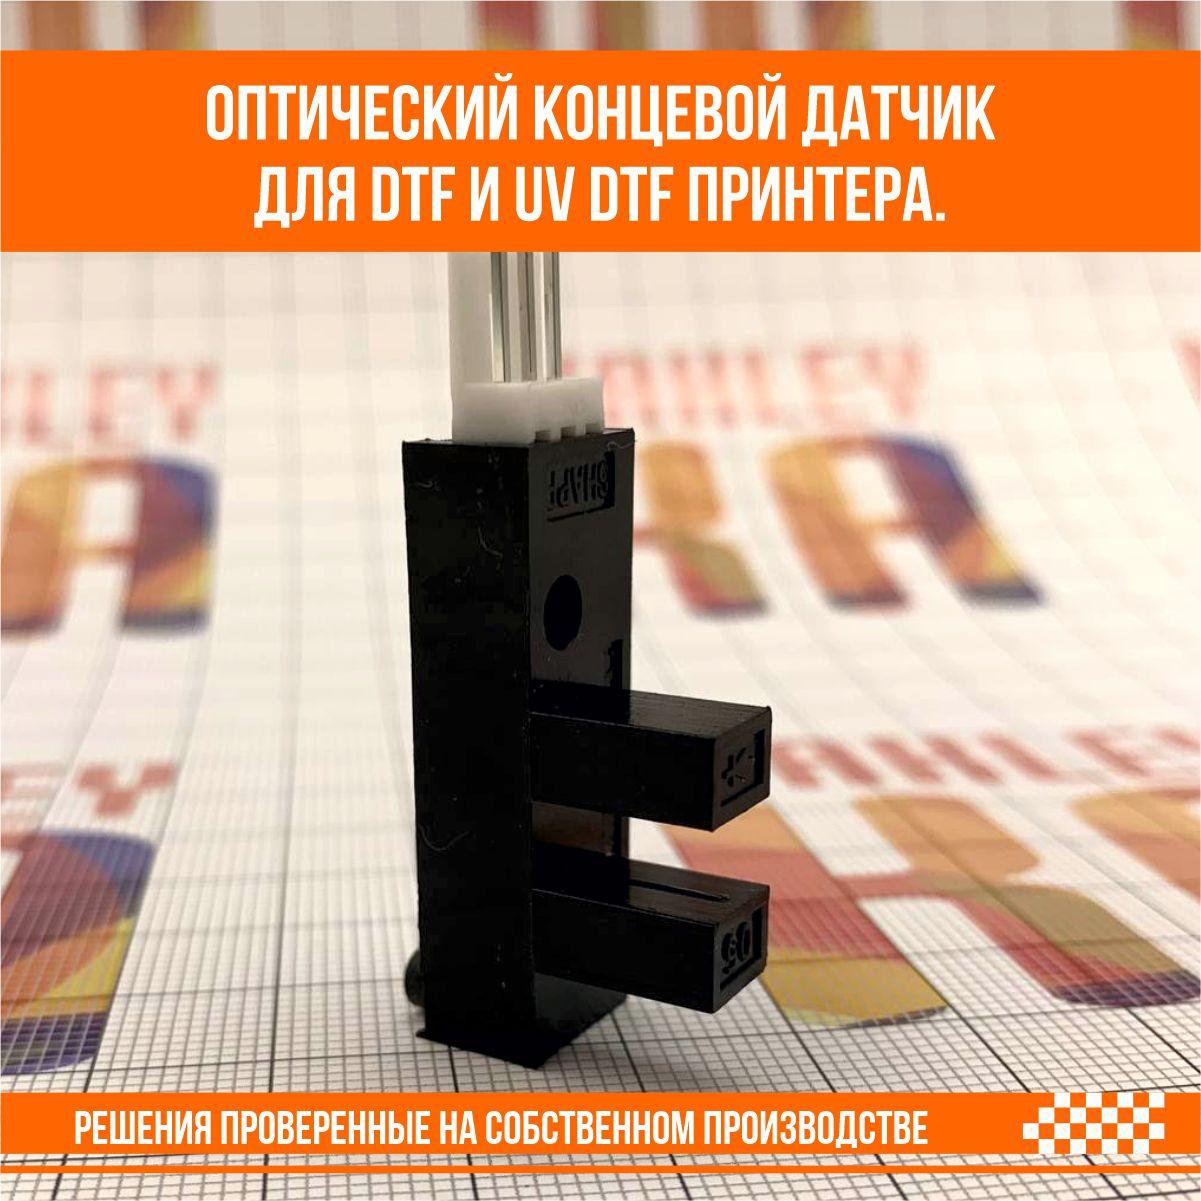 Оптический концевой датчик для DTF и UV DTF принтера